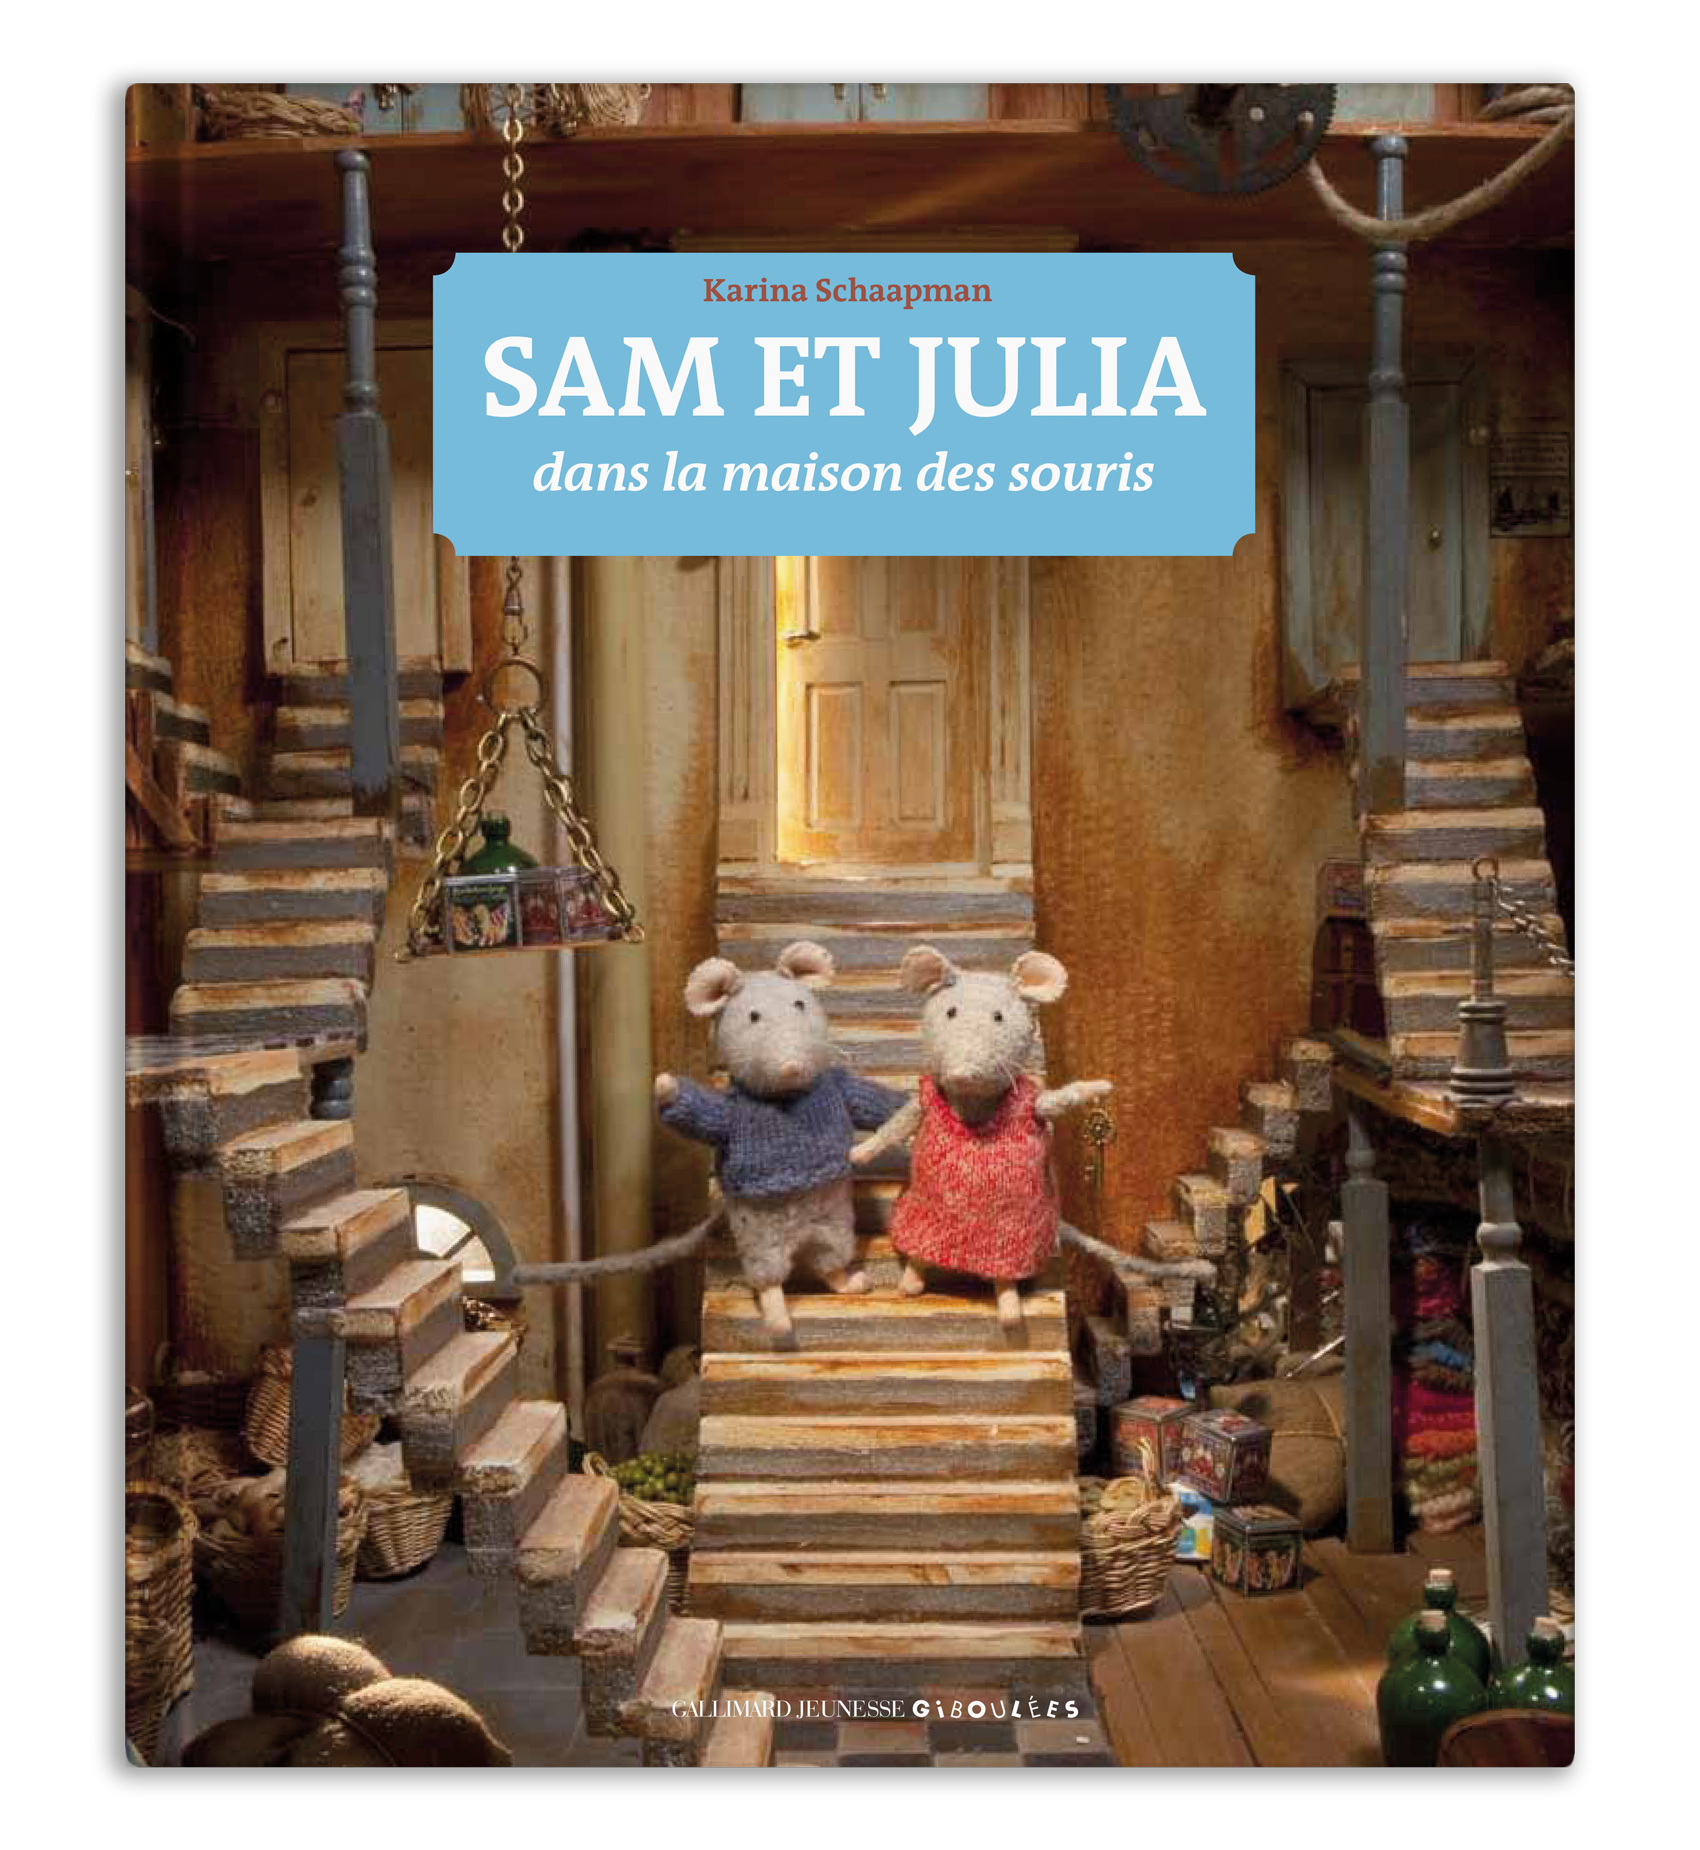 Sam et Julia, livre pour enfants